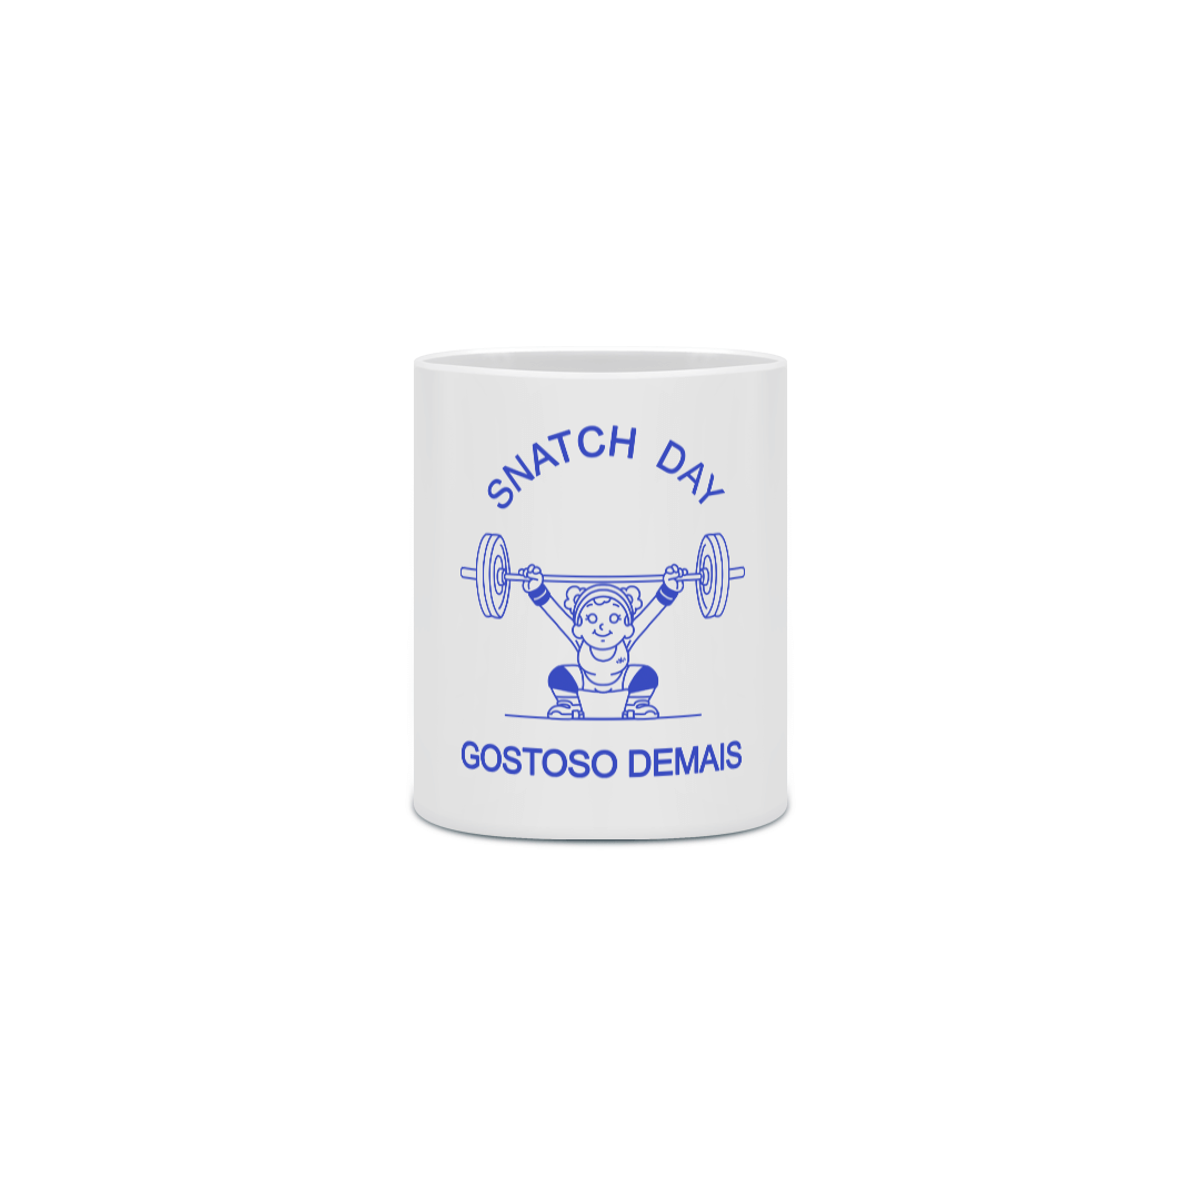 Nome do produto: Snatch Day - Gostoso Demais